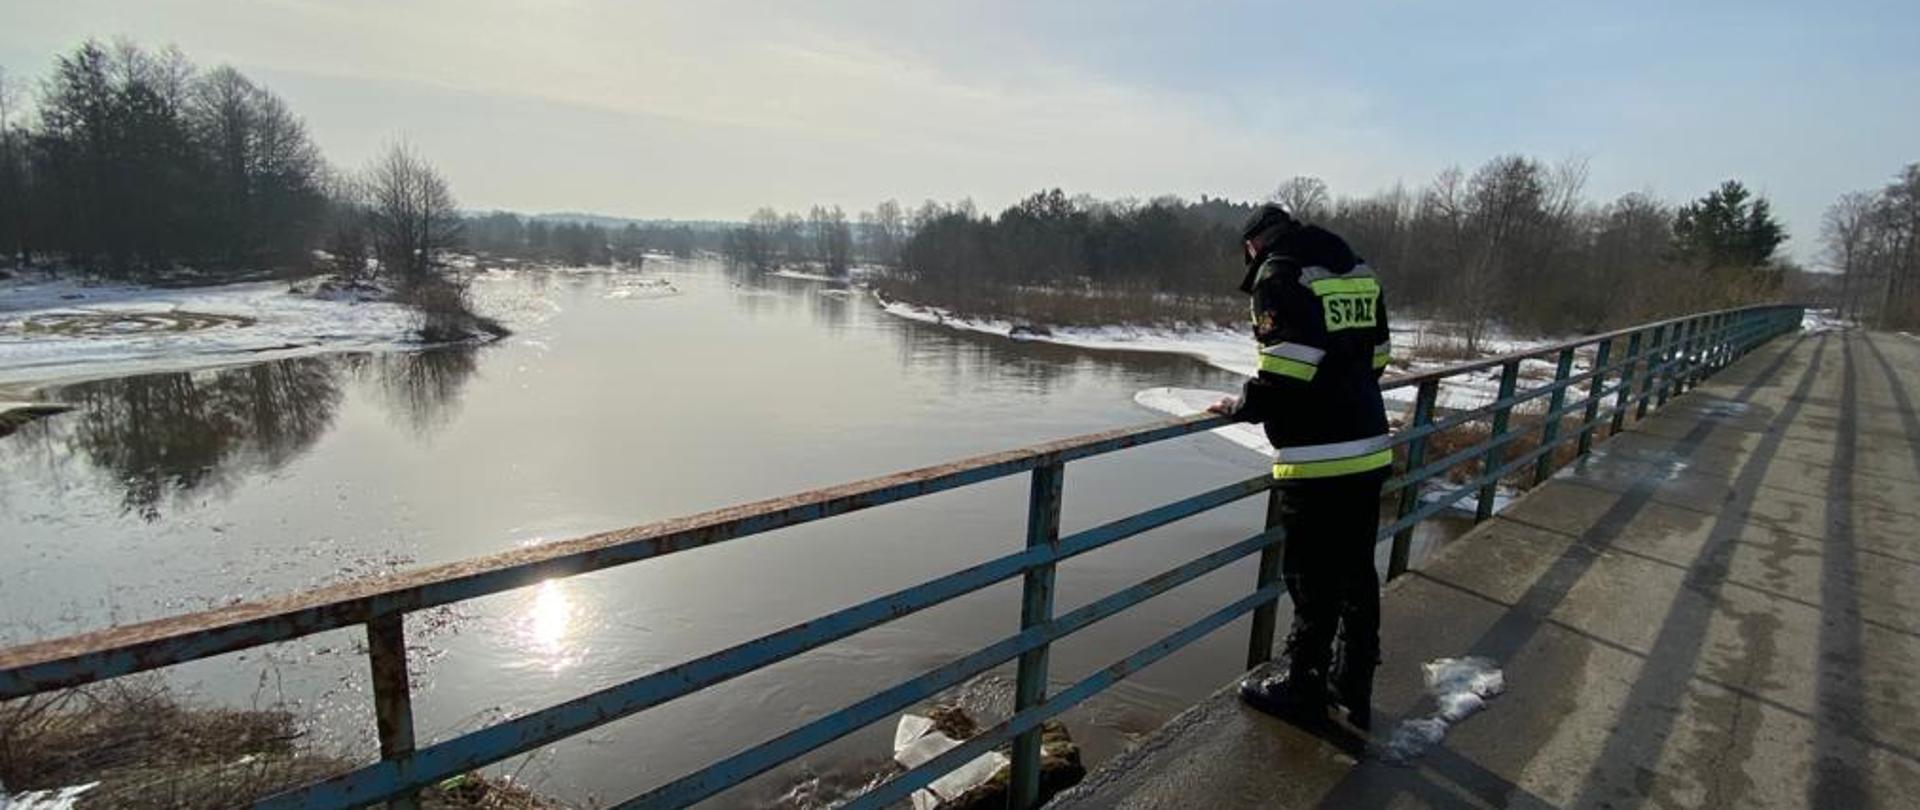 Strażak stojący na moście. Strażak obserwuje przepływającą poniżej rzekę. Rzeka ma wysoki poziom woda i ma szerokie koryto. 